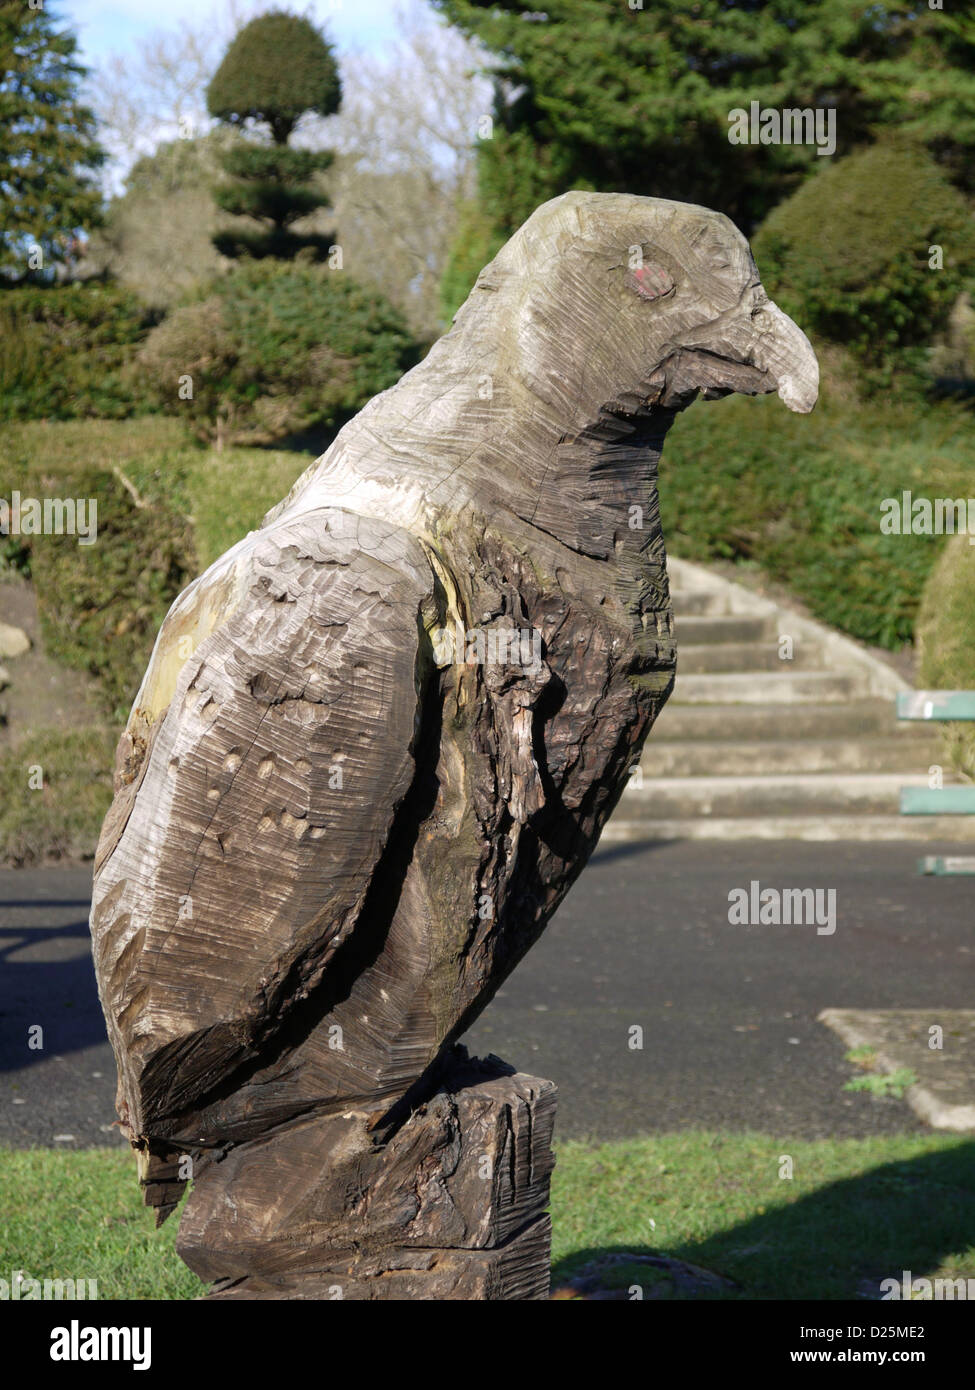 Sculpture en bois d'aigle dans un parc public Banque D'Images